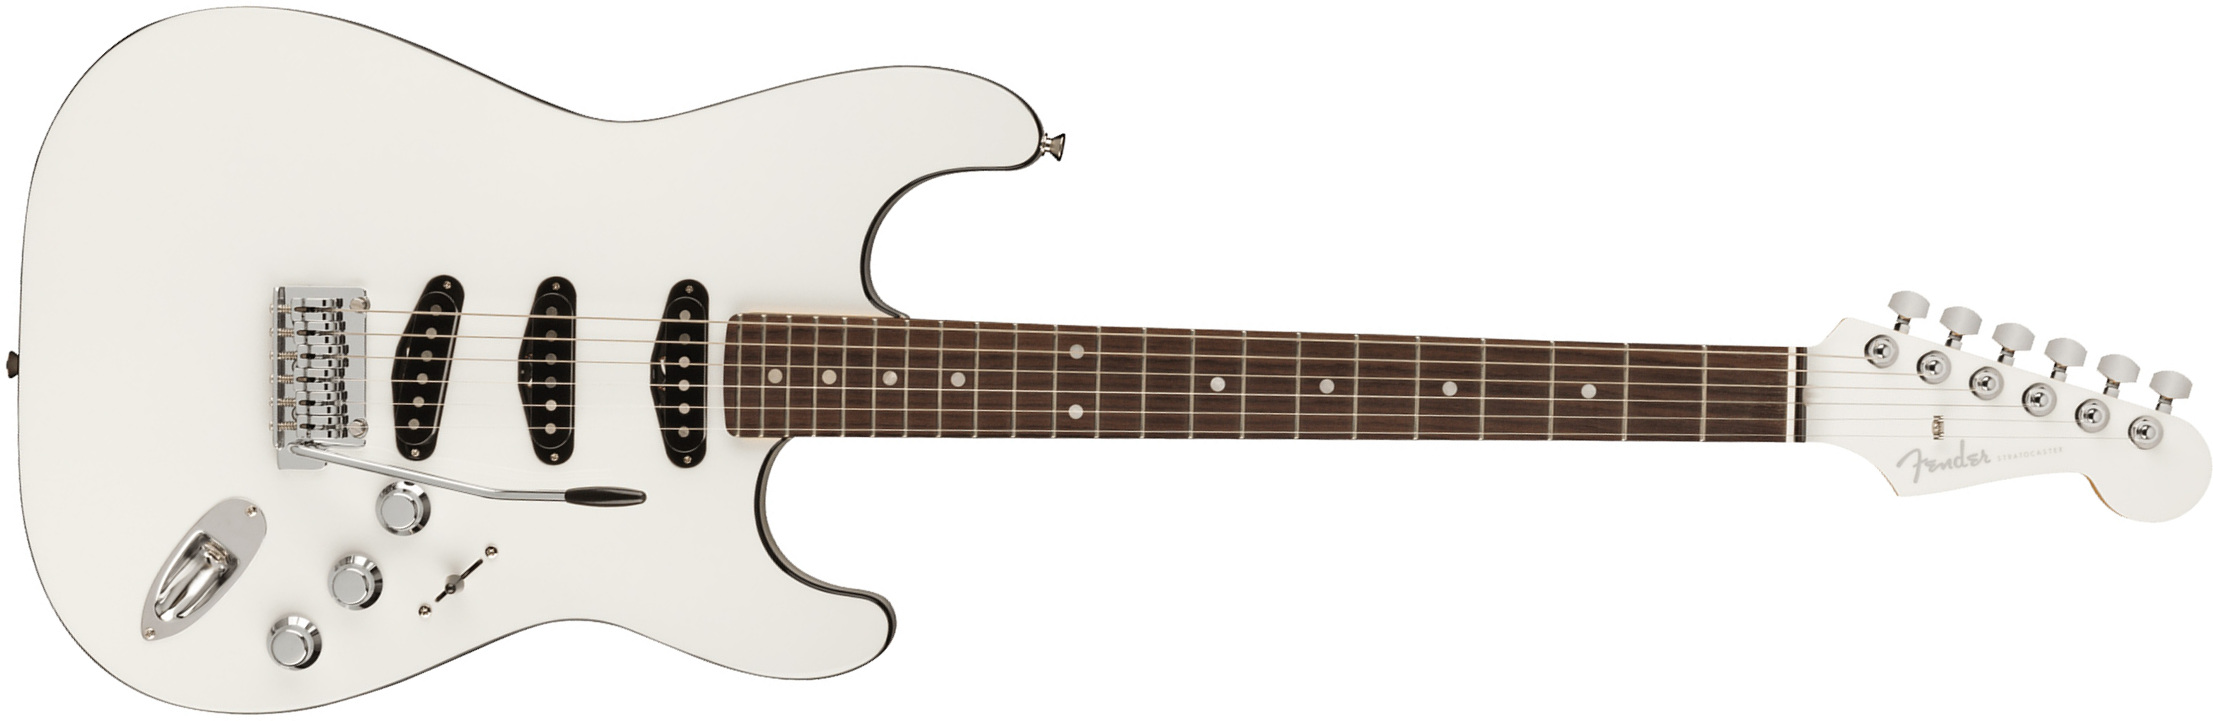 Fender Strat Aerodyne Special Jap 3s Trem Rw - Bright White - Guitare Électrique Forme Str - Main picture